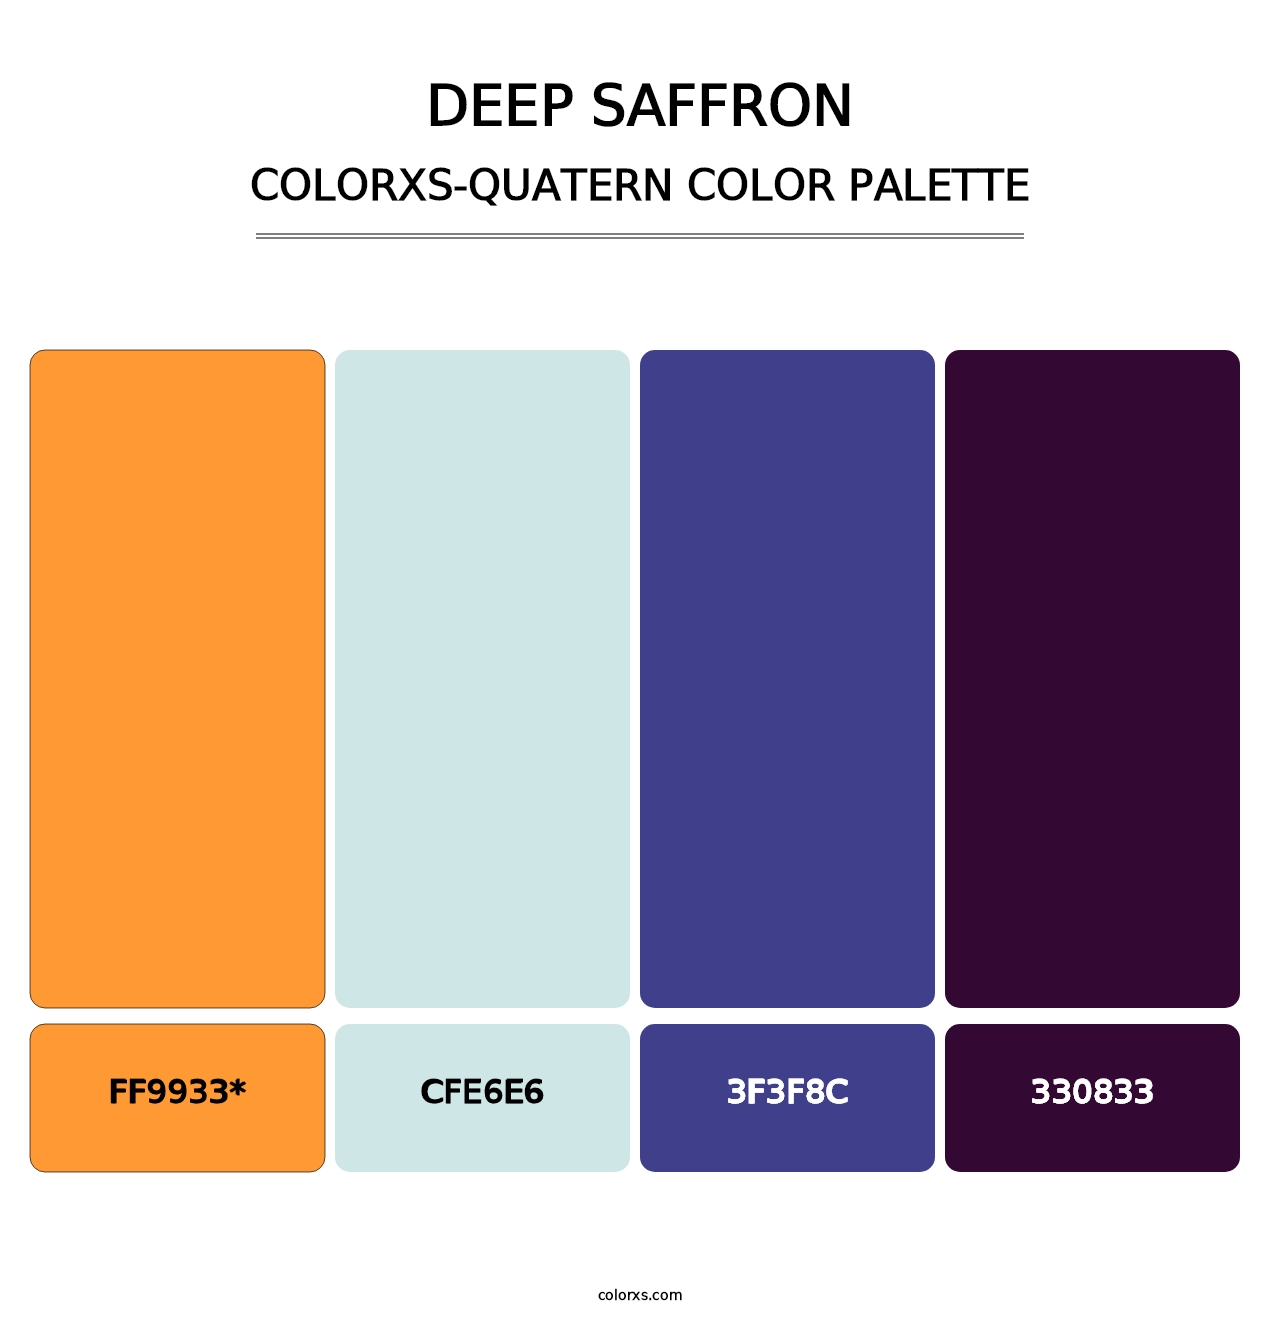 Deep Saffron - Colorxs Quatern Palette